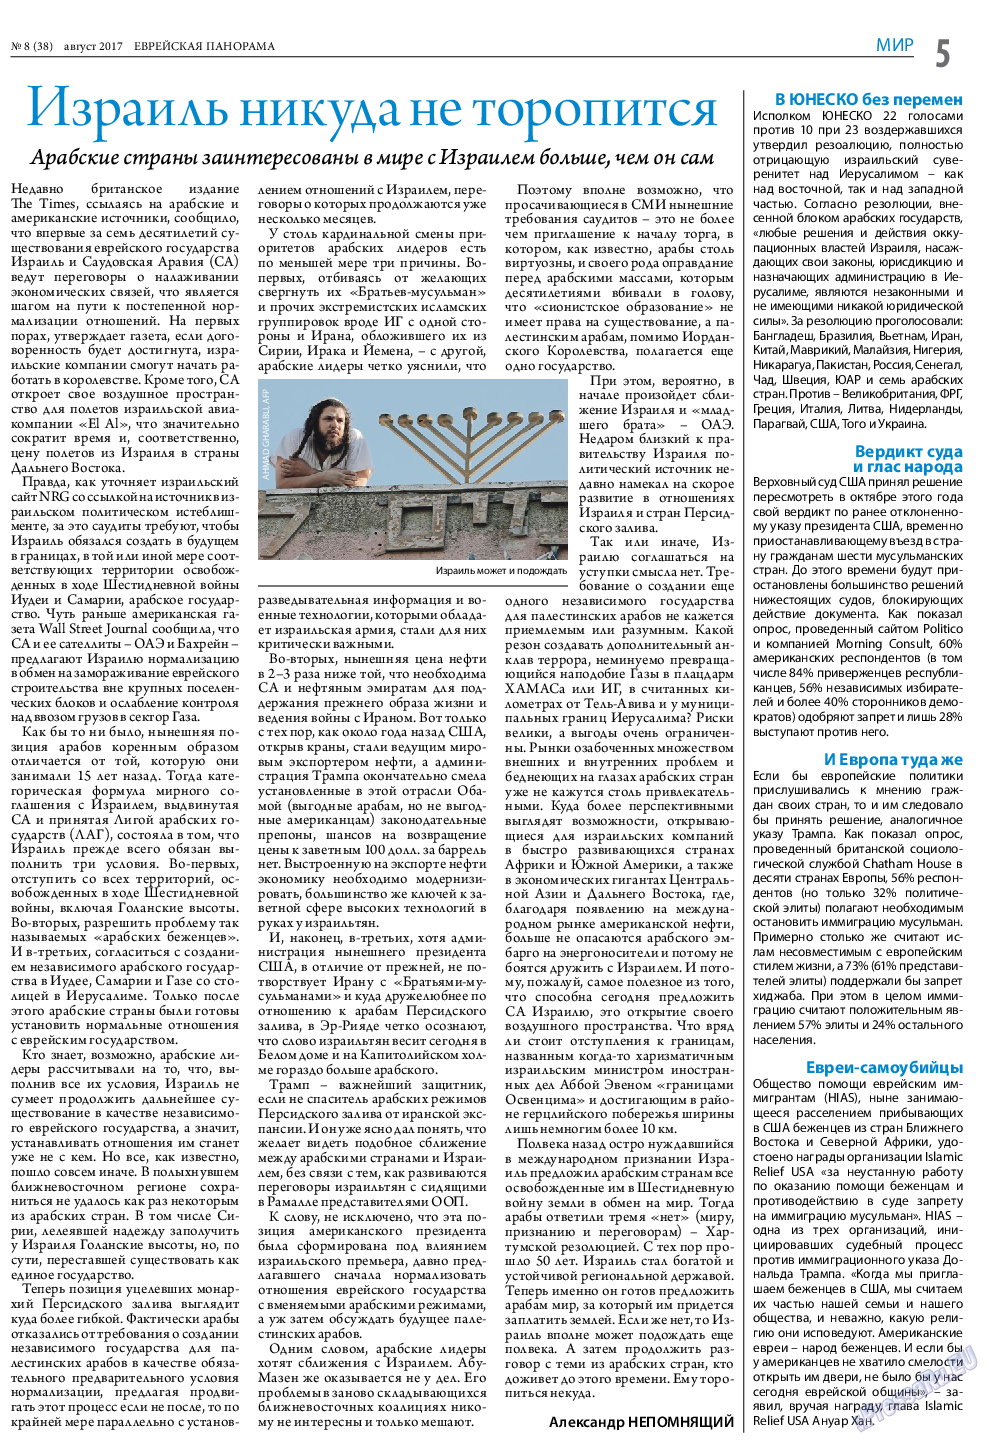 Еврейская панорама (газета). 2017 год, номер 8, стр. 5